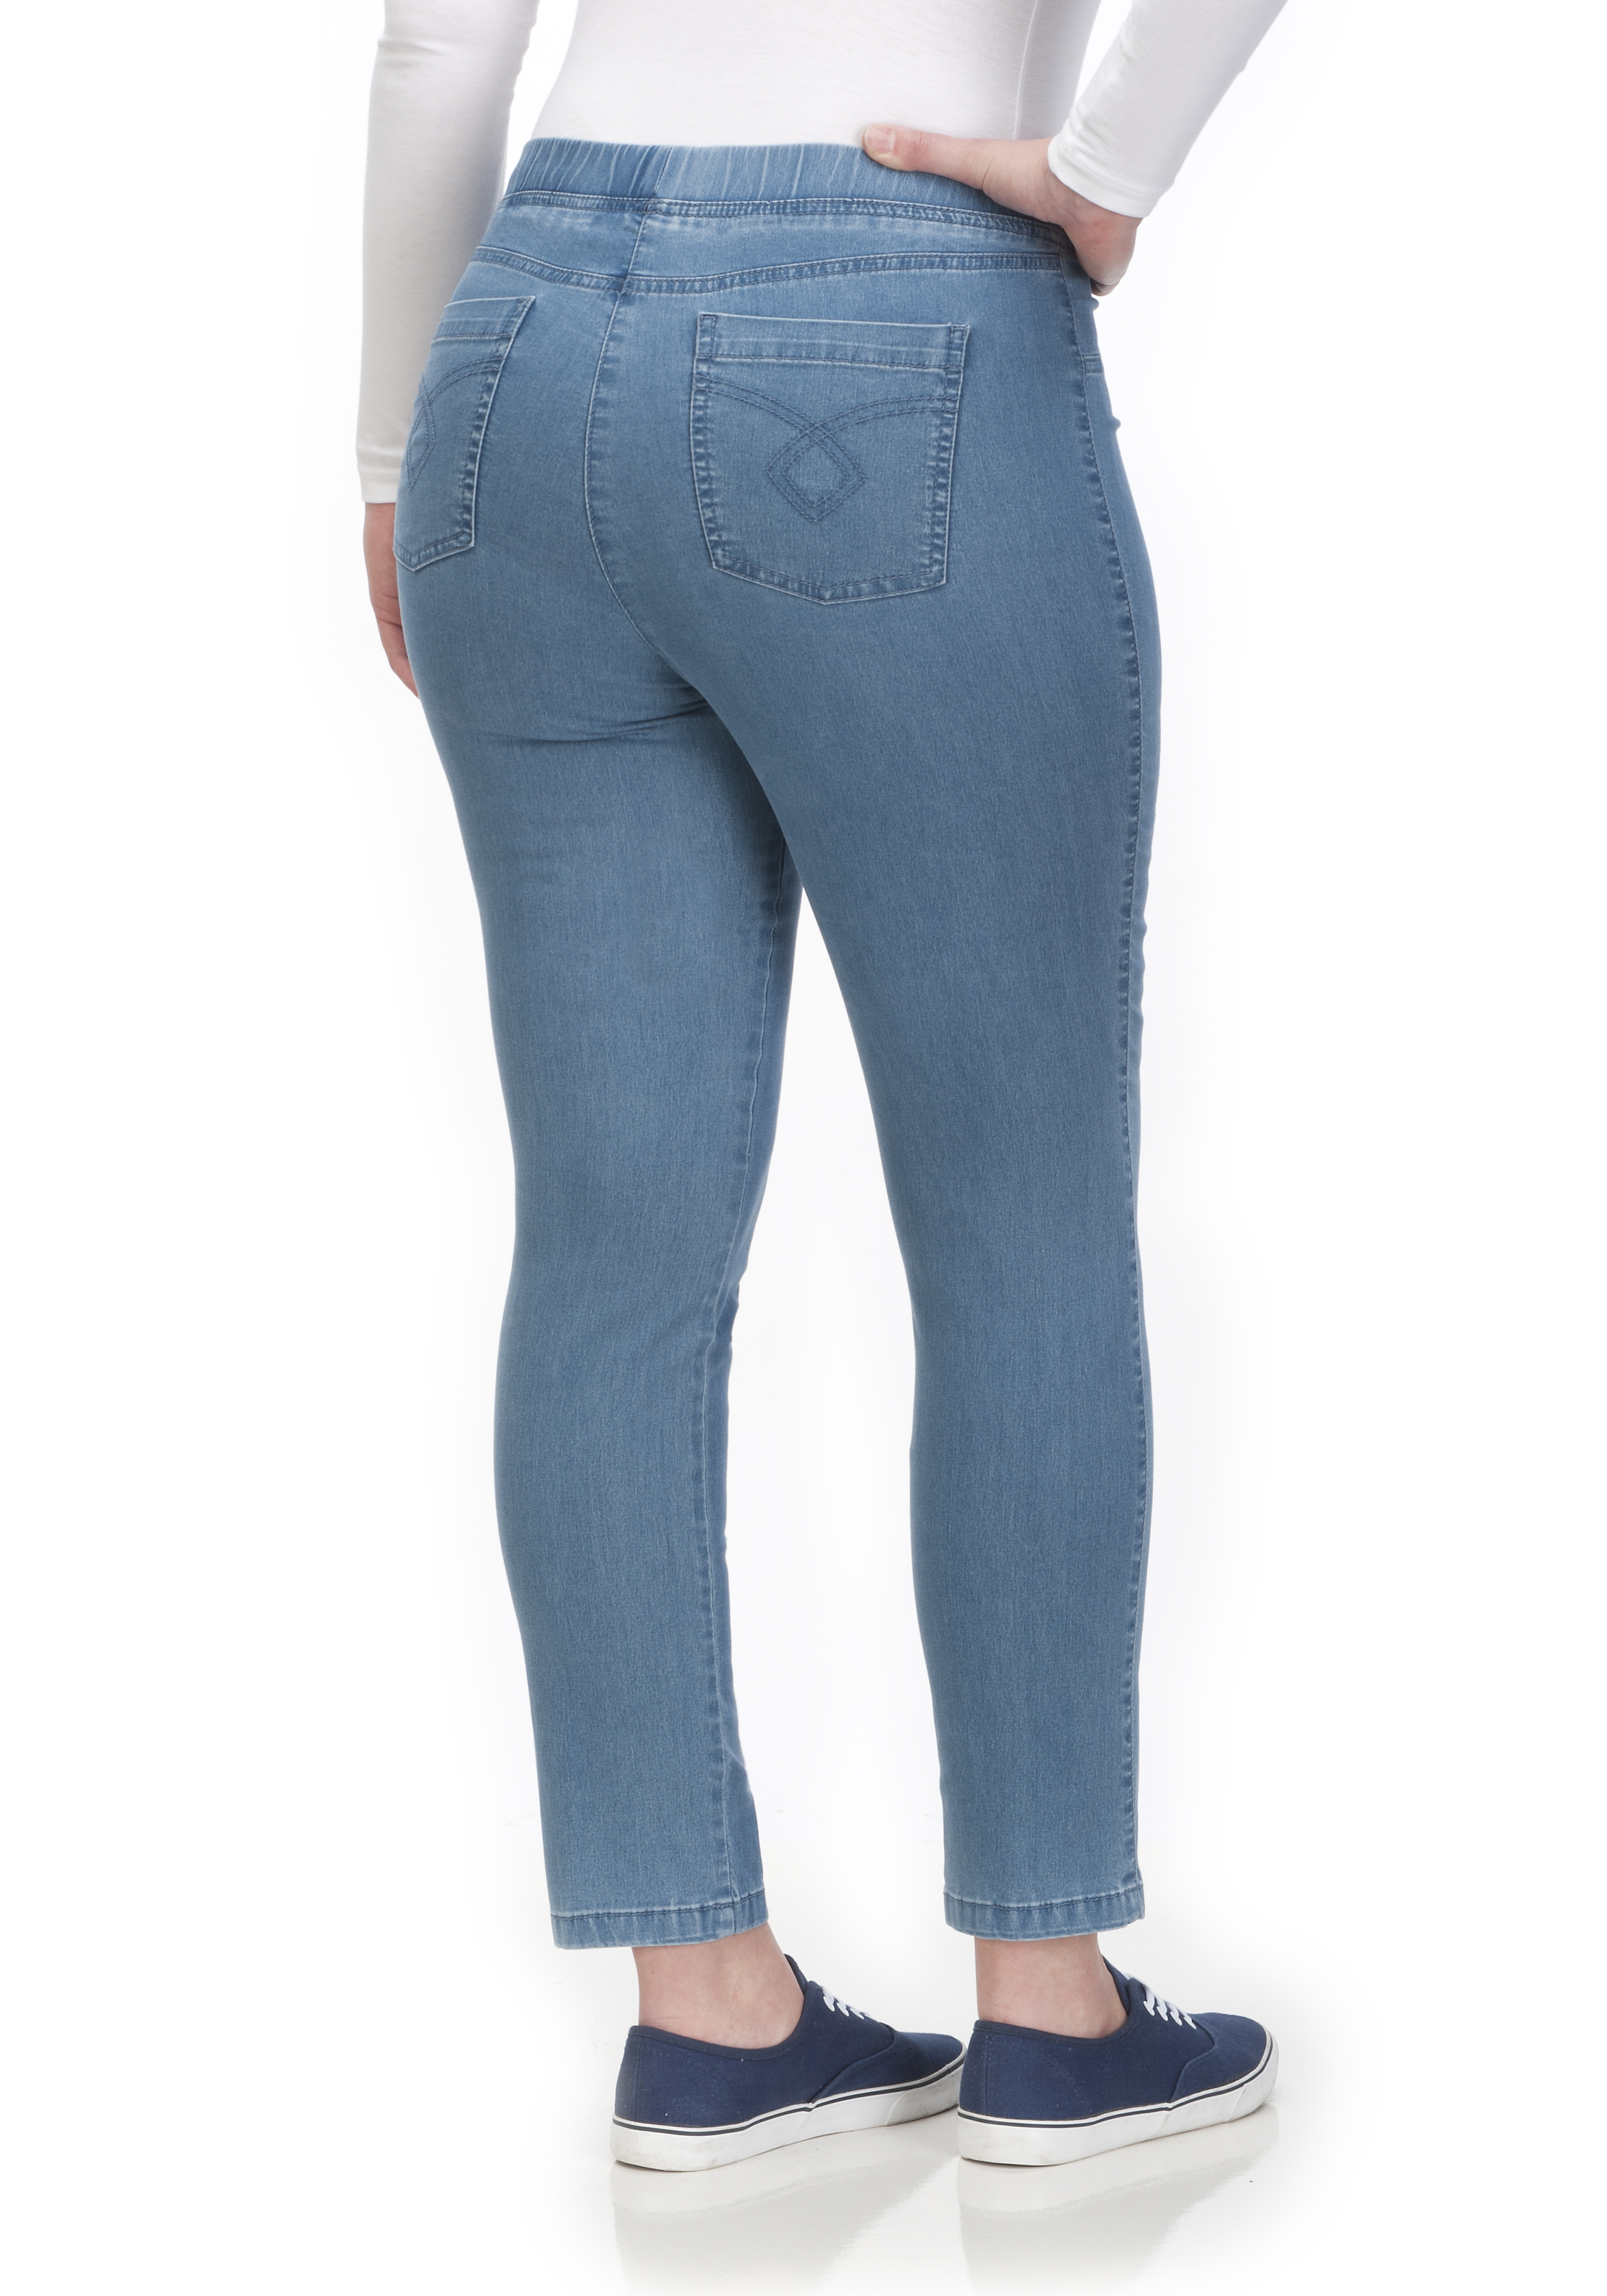 KjBRAND Jeggings JENNY Superstretch - Jeans by Curvy BiNA